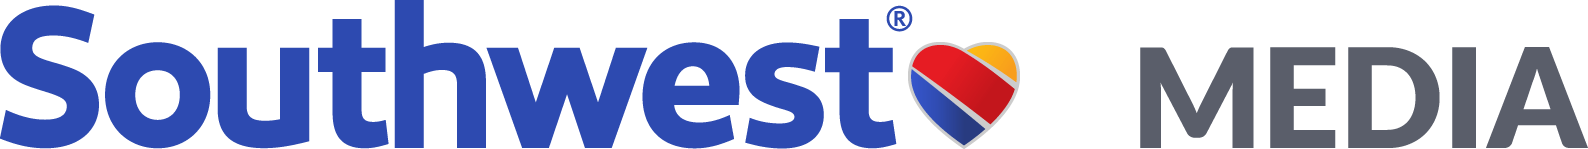 Southwest Company Logo - Southwest Airlines Newsroom